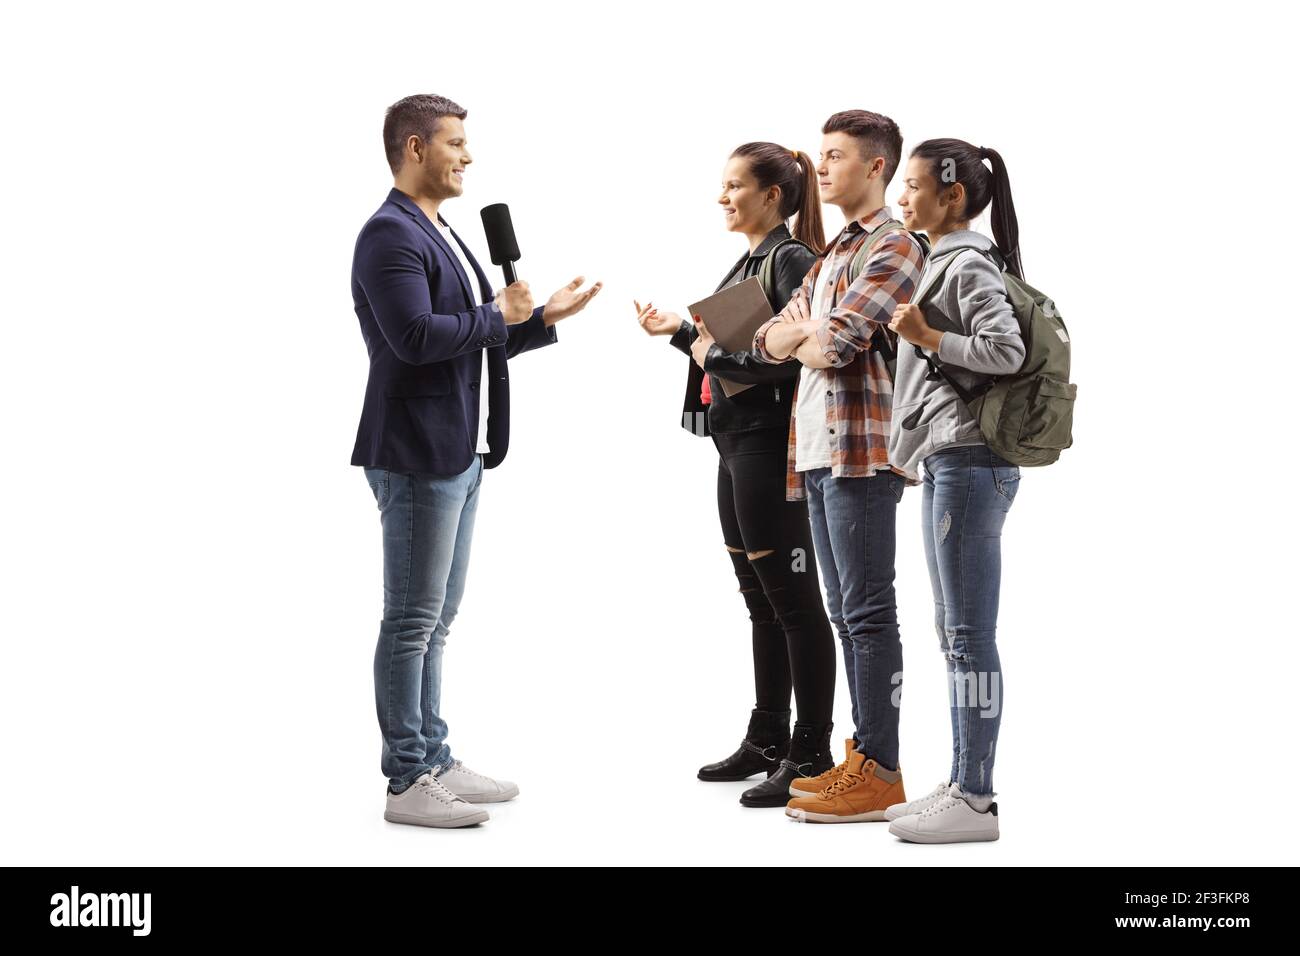 Männlicher Reporter interviewte eine Gruppe von jungen Studenten isoliert auf Weißer Hintergrund Stockfoto